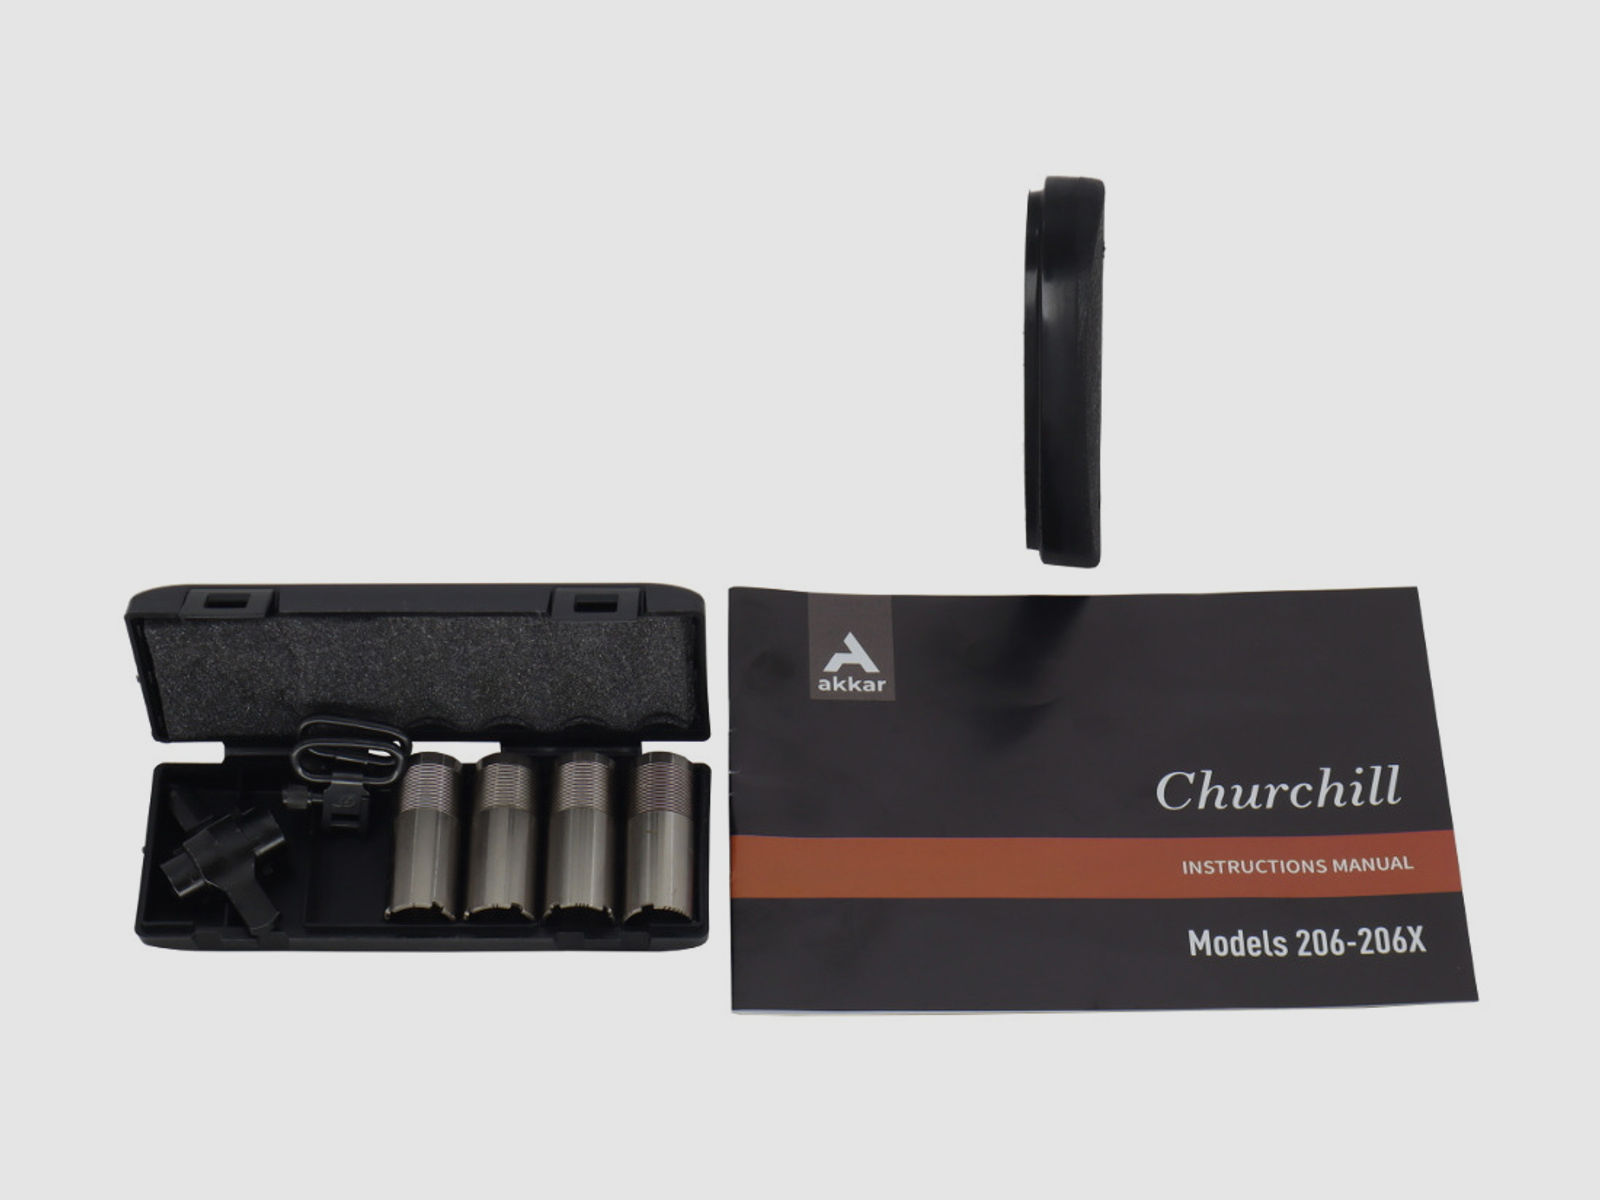  Akkar Silah   Churchill 206E Lady Black / Damenflinte / Bockdoppelflinte / BDF / Stahlschrotbeschuss